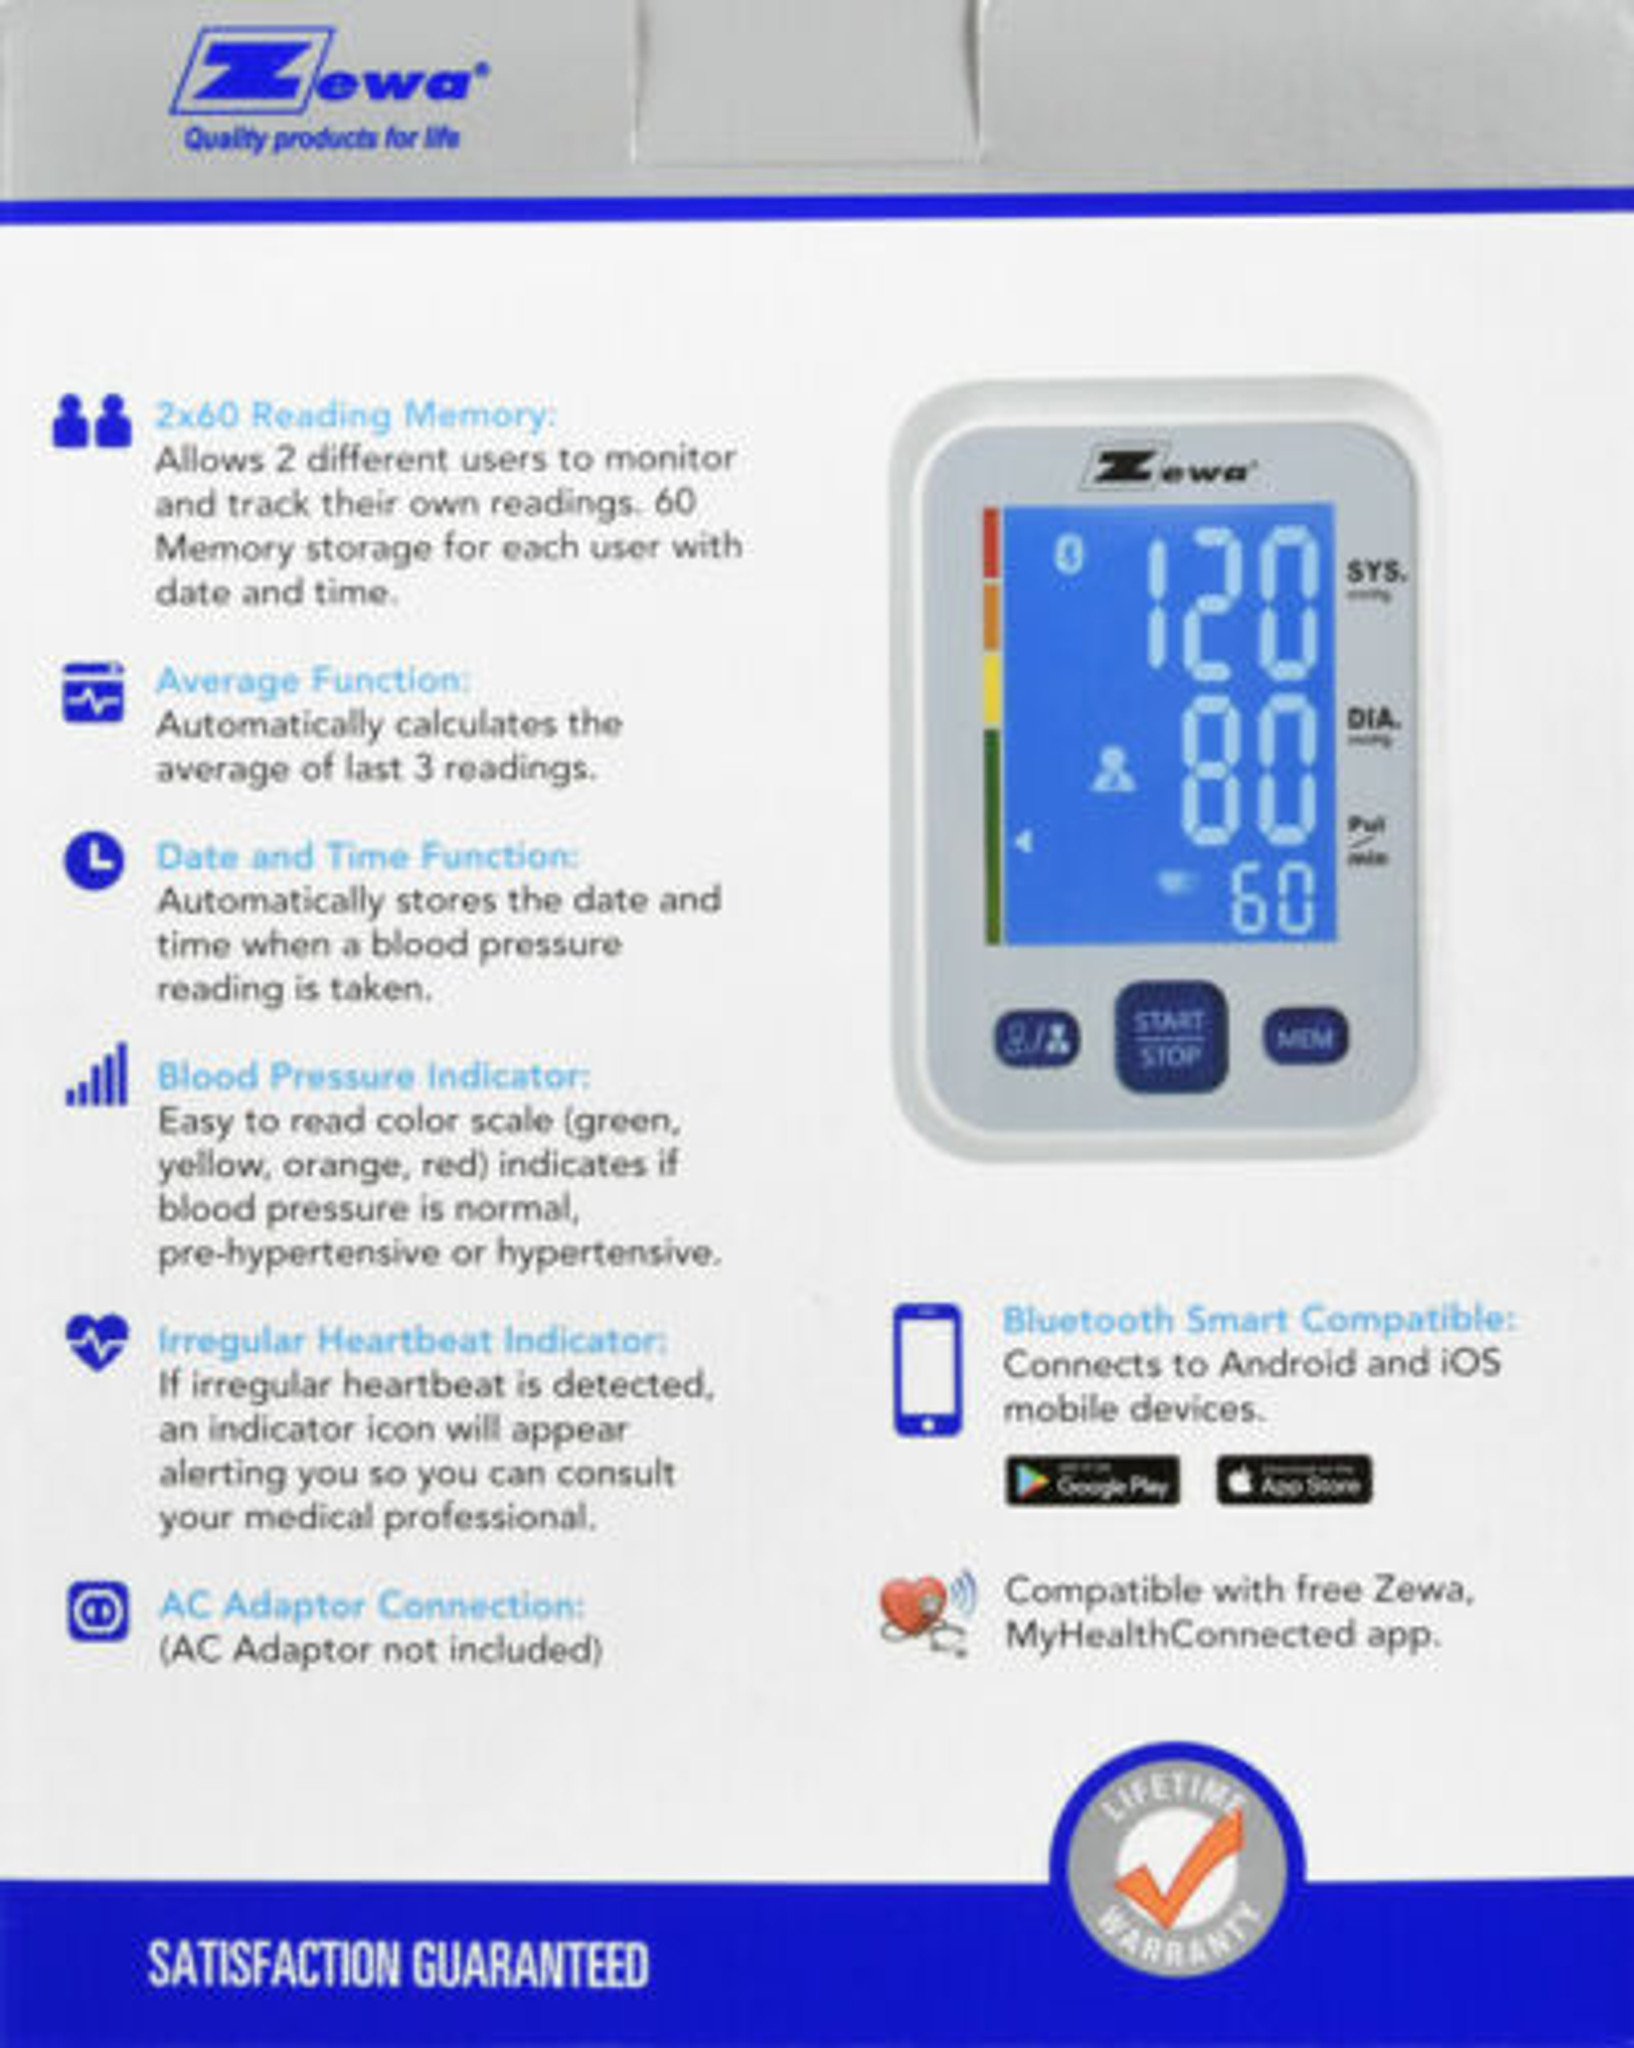 A&D Medical Multi-User Blood Pressure Monitor UA-767F Carry Case and Cuff